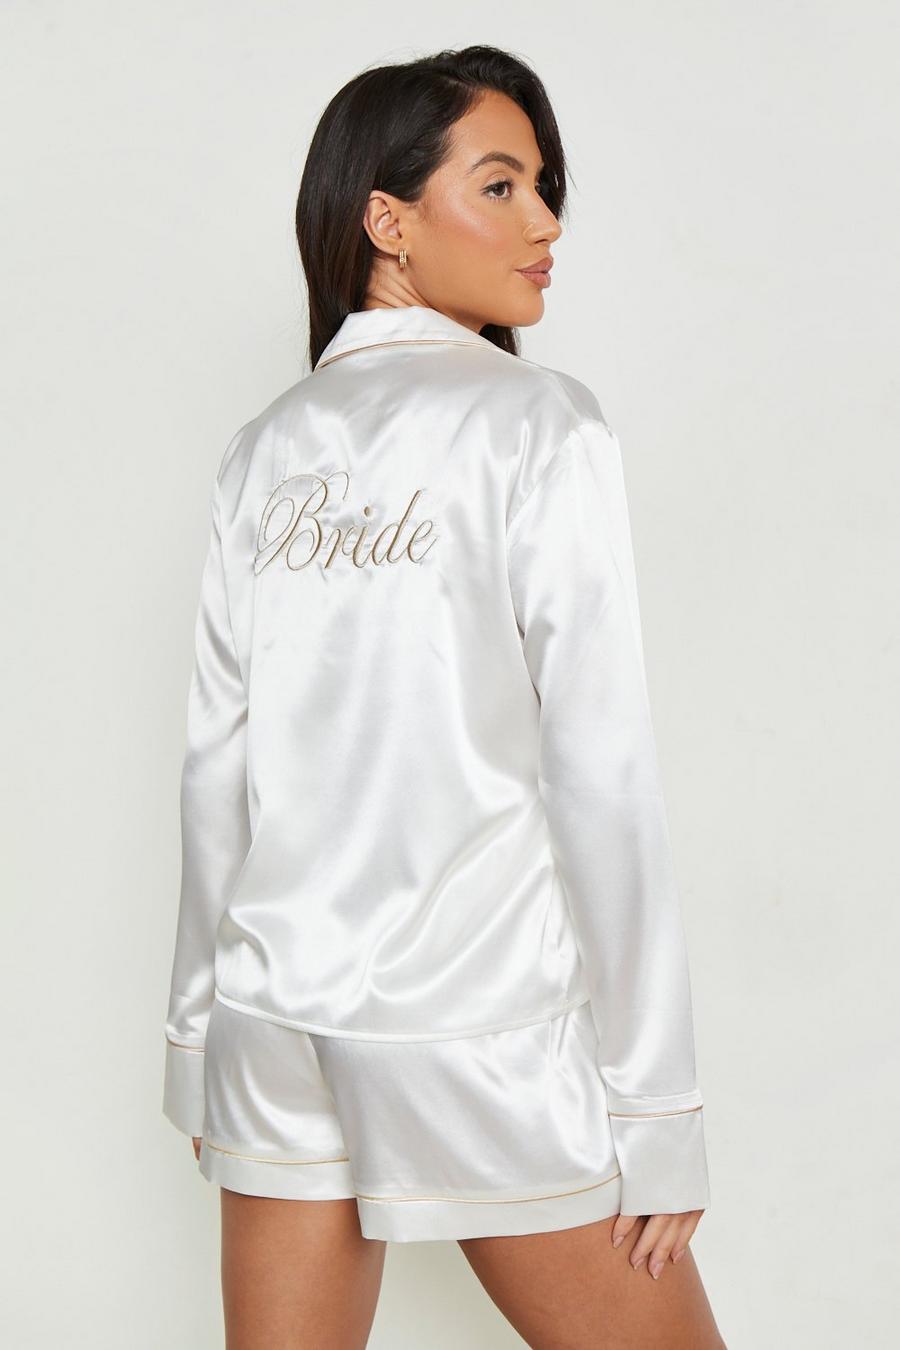 Pyjama-Set mit Bride-Stickerei, White weiß